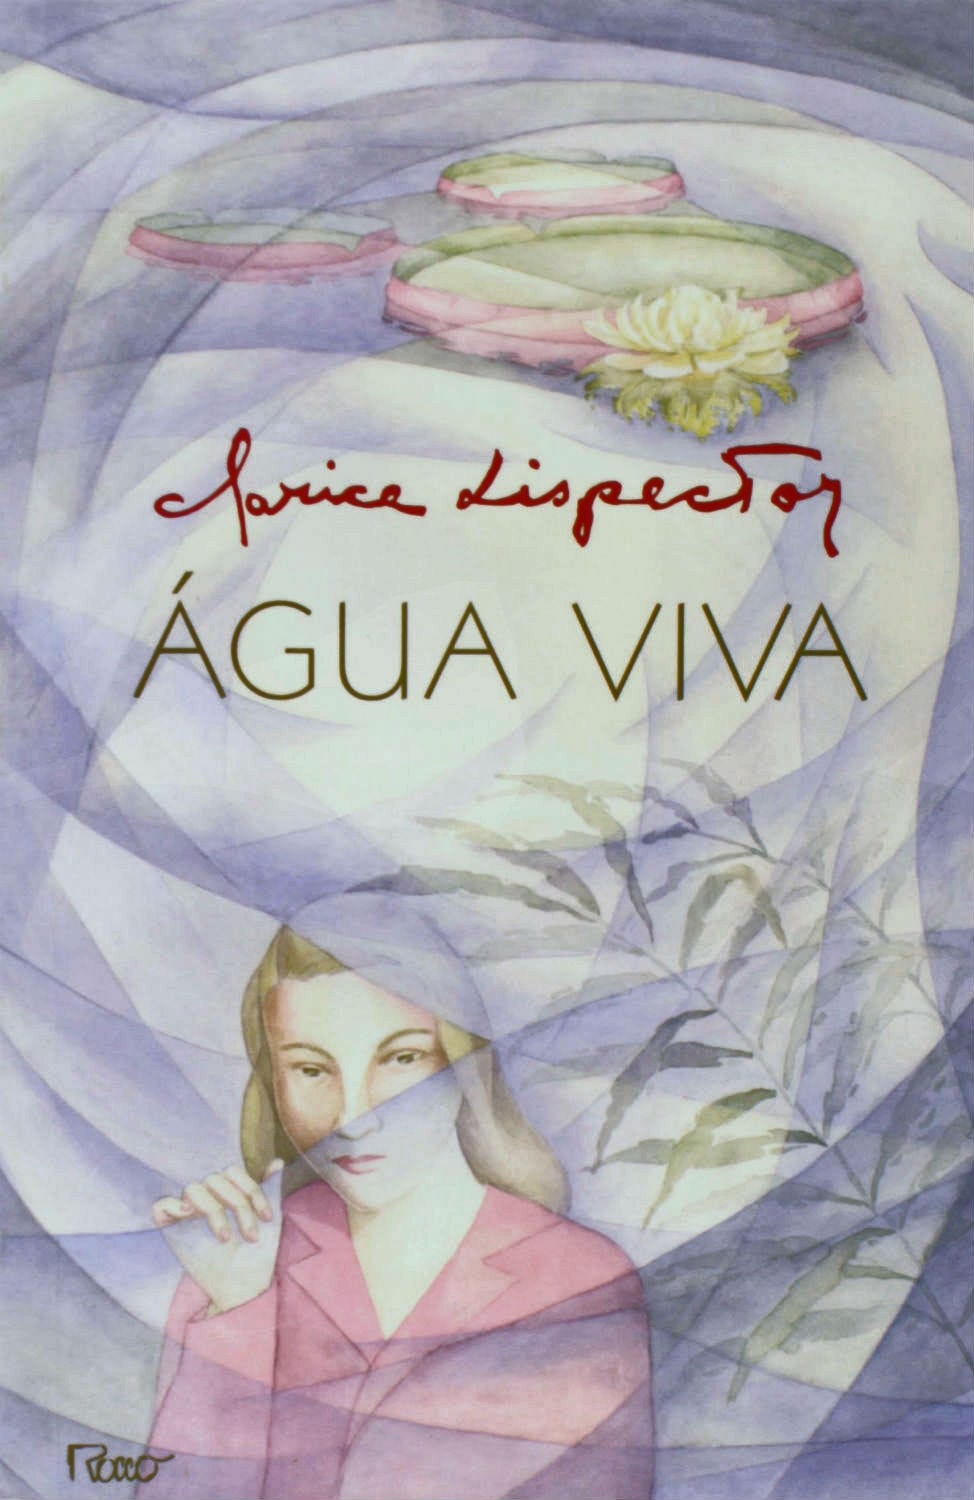 Água Viva' de Clarice Lispector. A dica literária da semana é o romance… |  by Hilton De Souza Marques | Medium